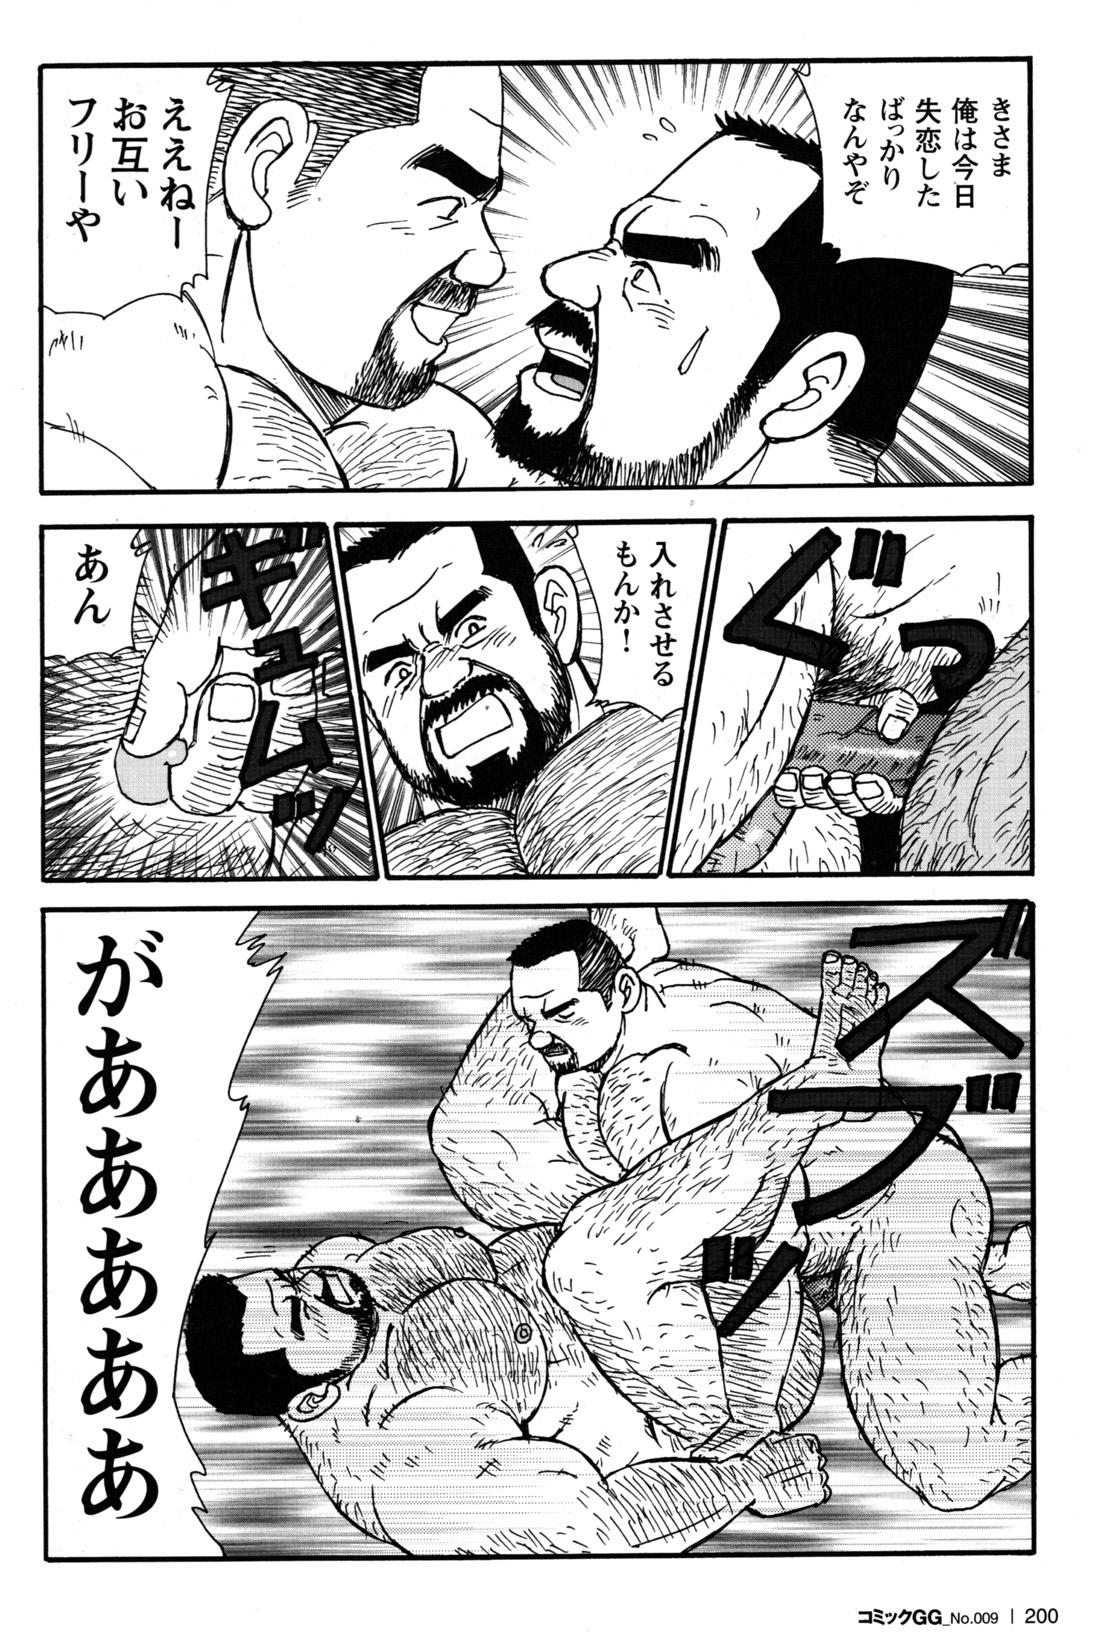 Comic G-men Gaho No.09 Gacchibi Zeme 182